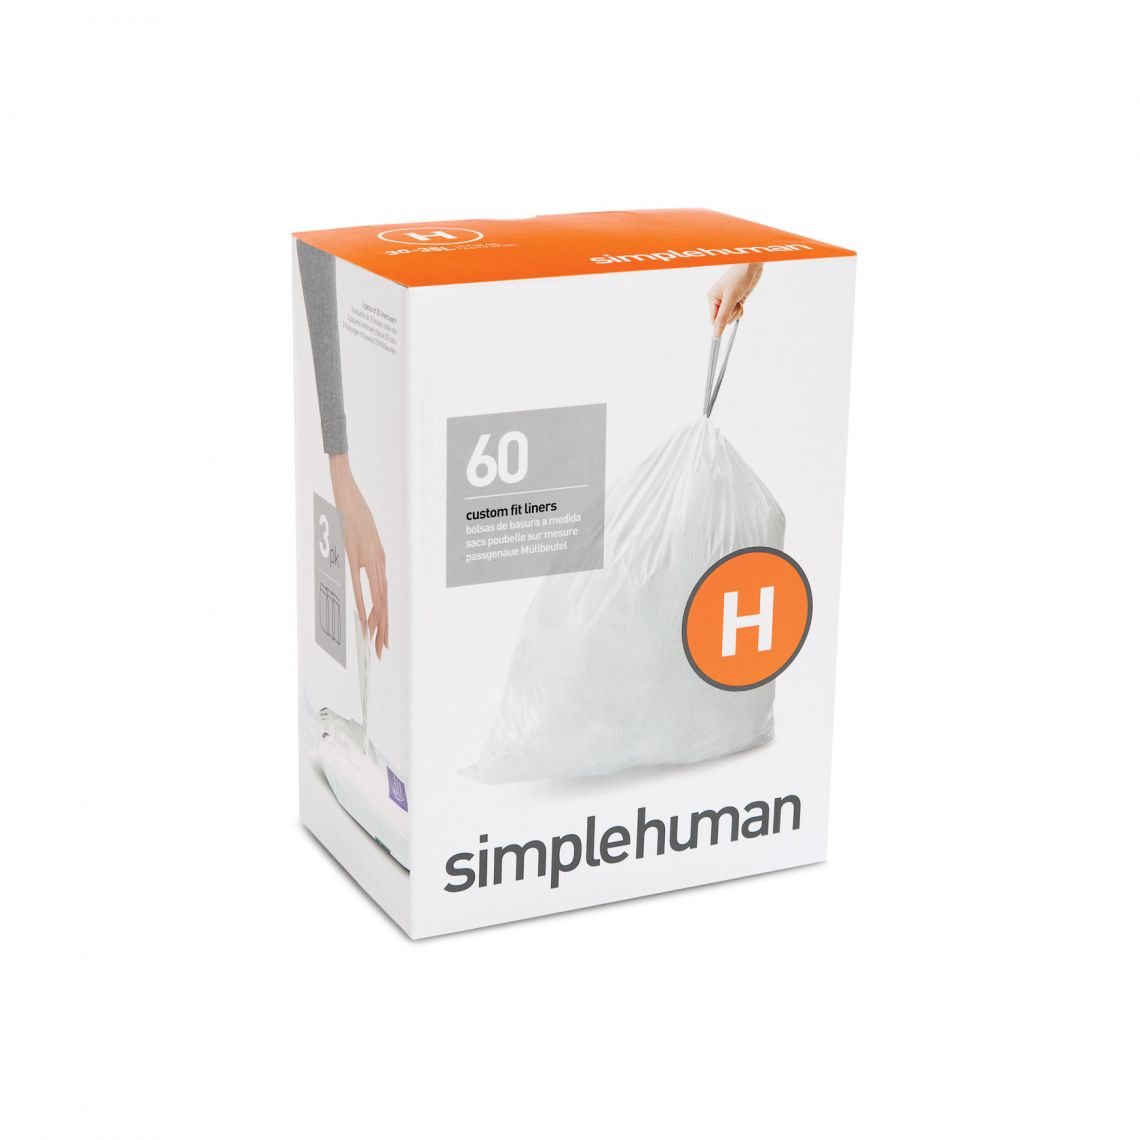 מארז 360 שקיות יעודיות לפחים (H) דגם Simplehuman - CW0258 - סימפליומן